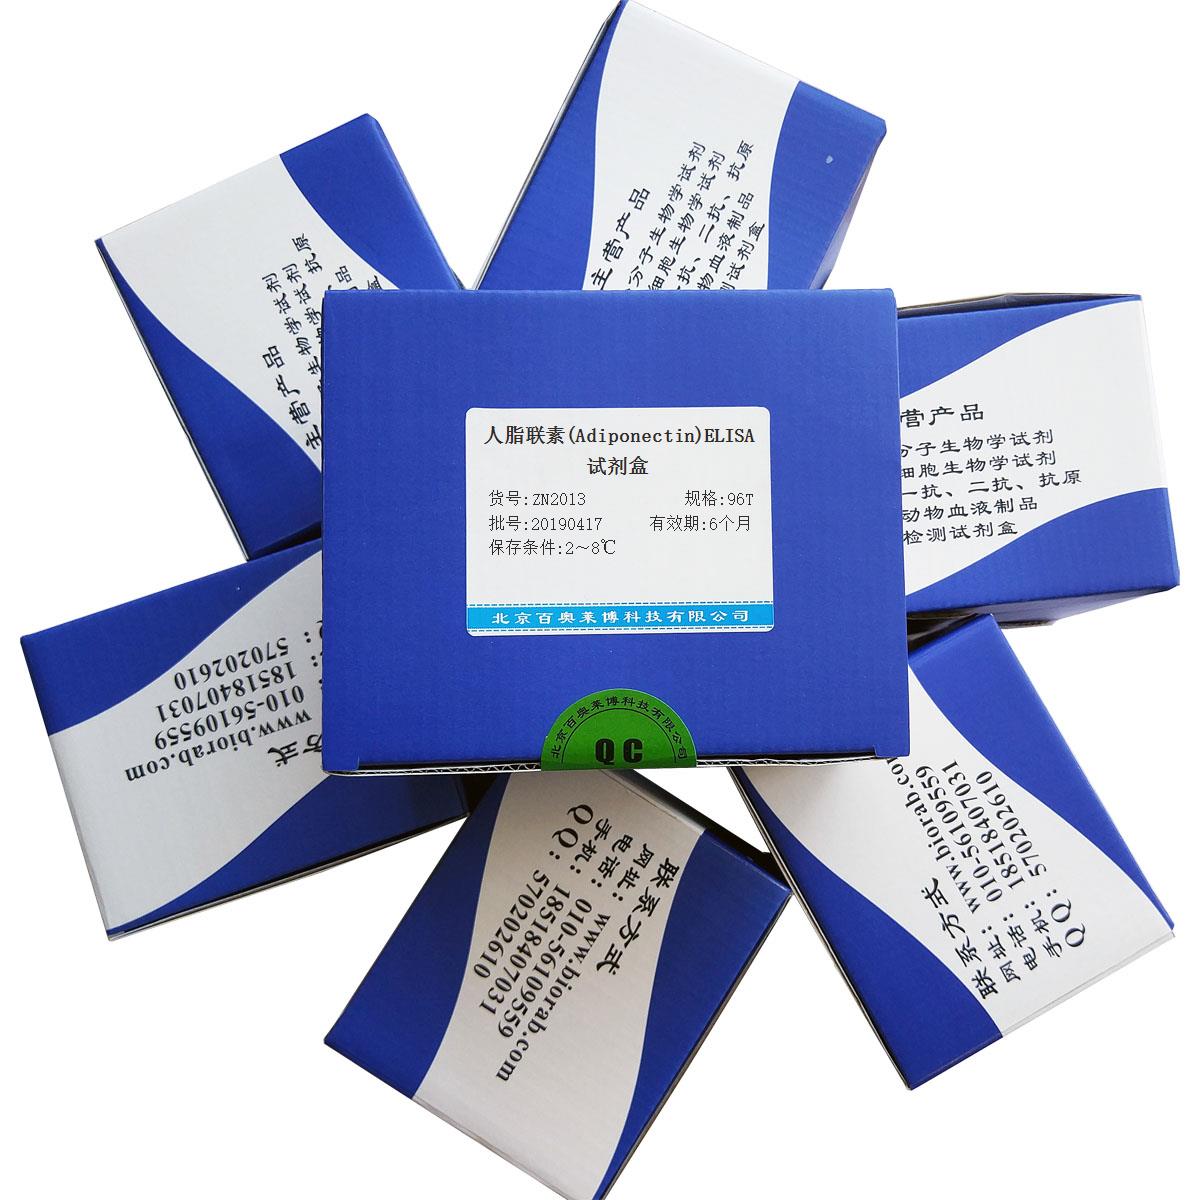 人脂联素(Adiponectin)ELISA试剂盒